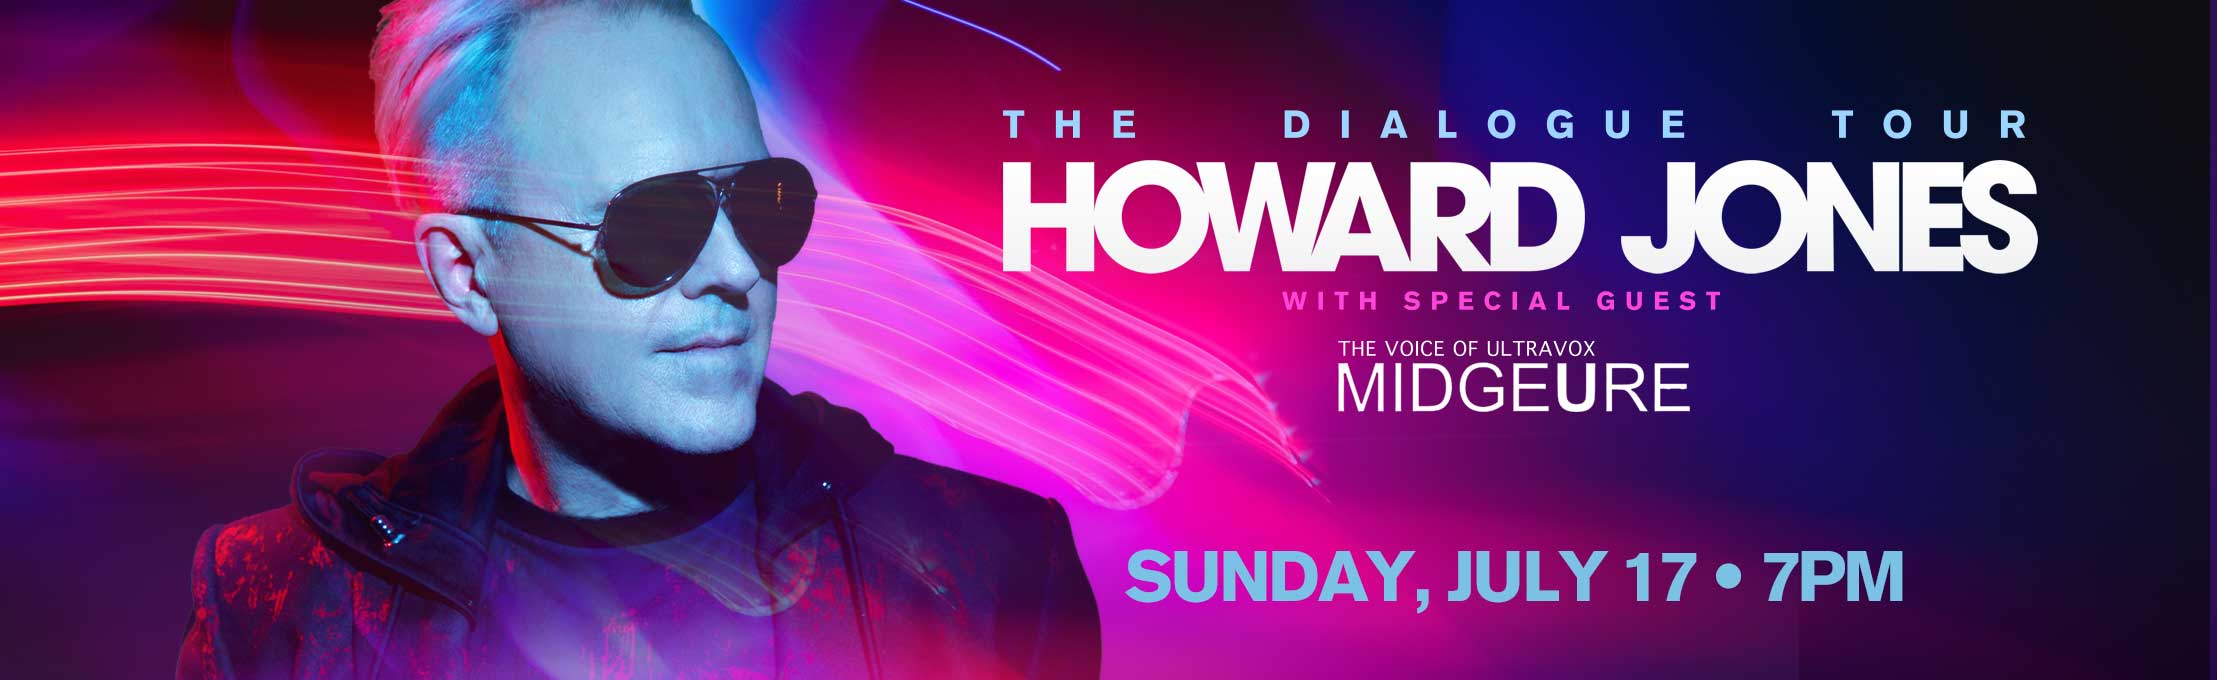 The Dialogue Tour with Howard Jones